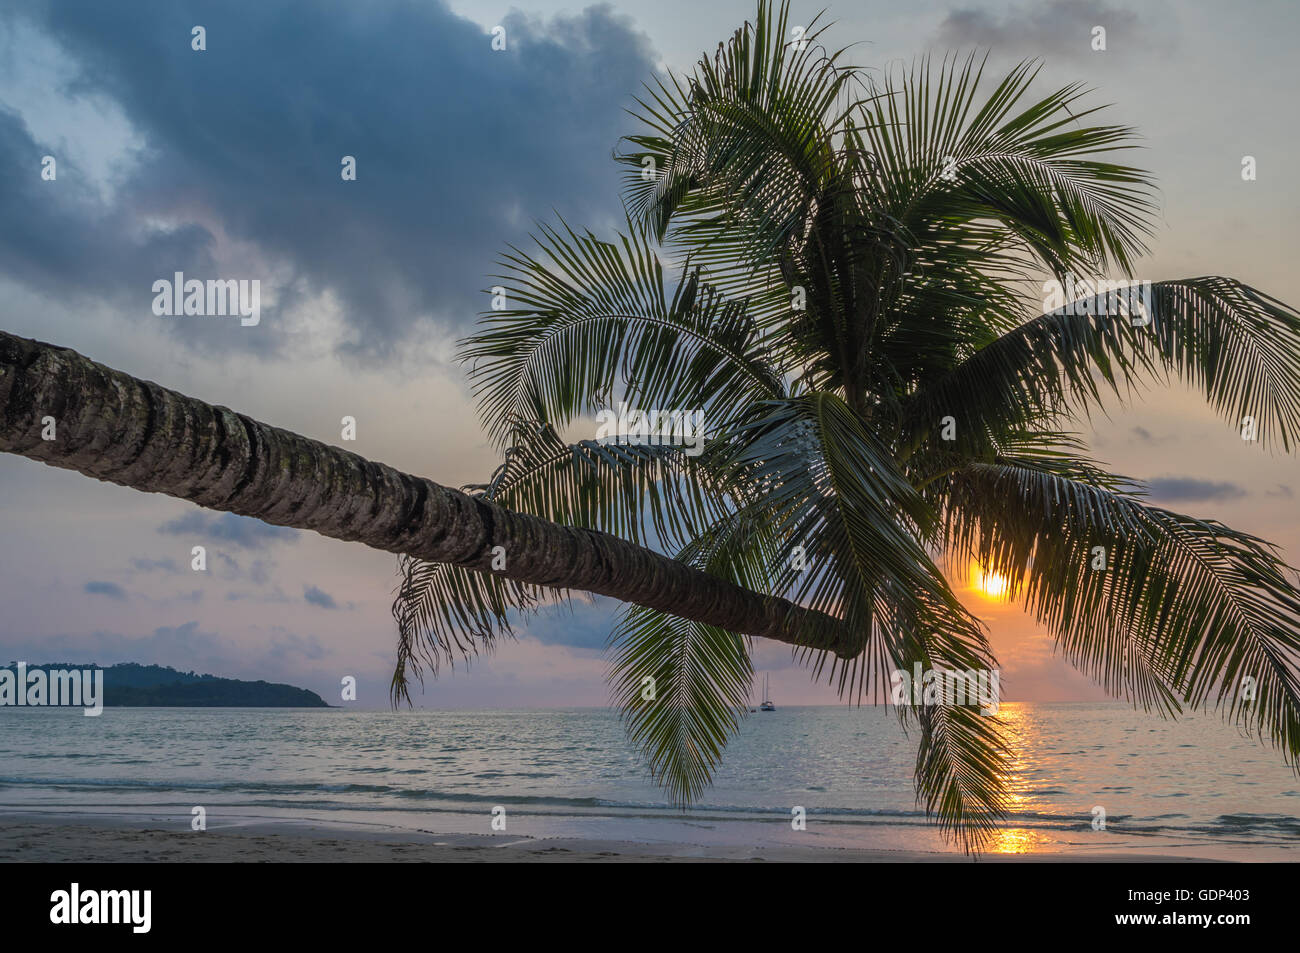 Cocotier dans l'île tropicale beach Banque D'Images